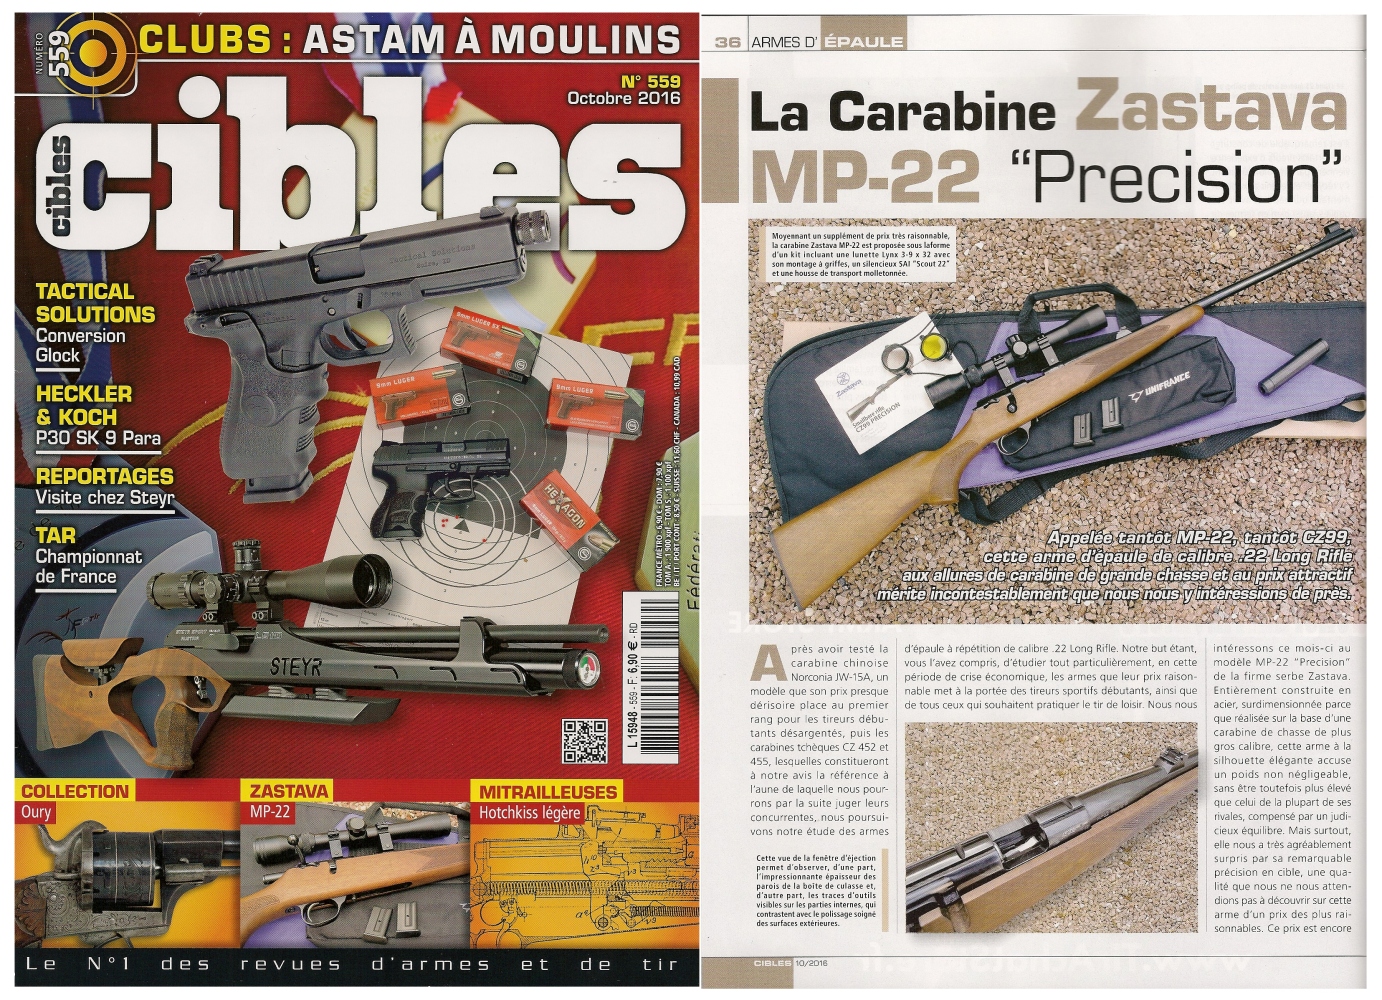 Le banc d'essai de la carabine Zastava MP-22 a été publié sur 7 pages dans le magazine Cibles n°559 (octobre 2016).